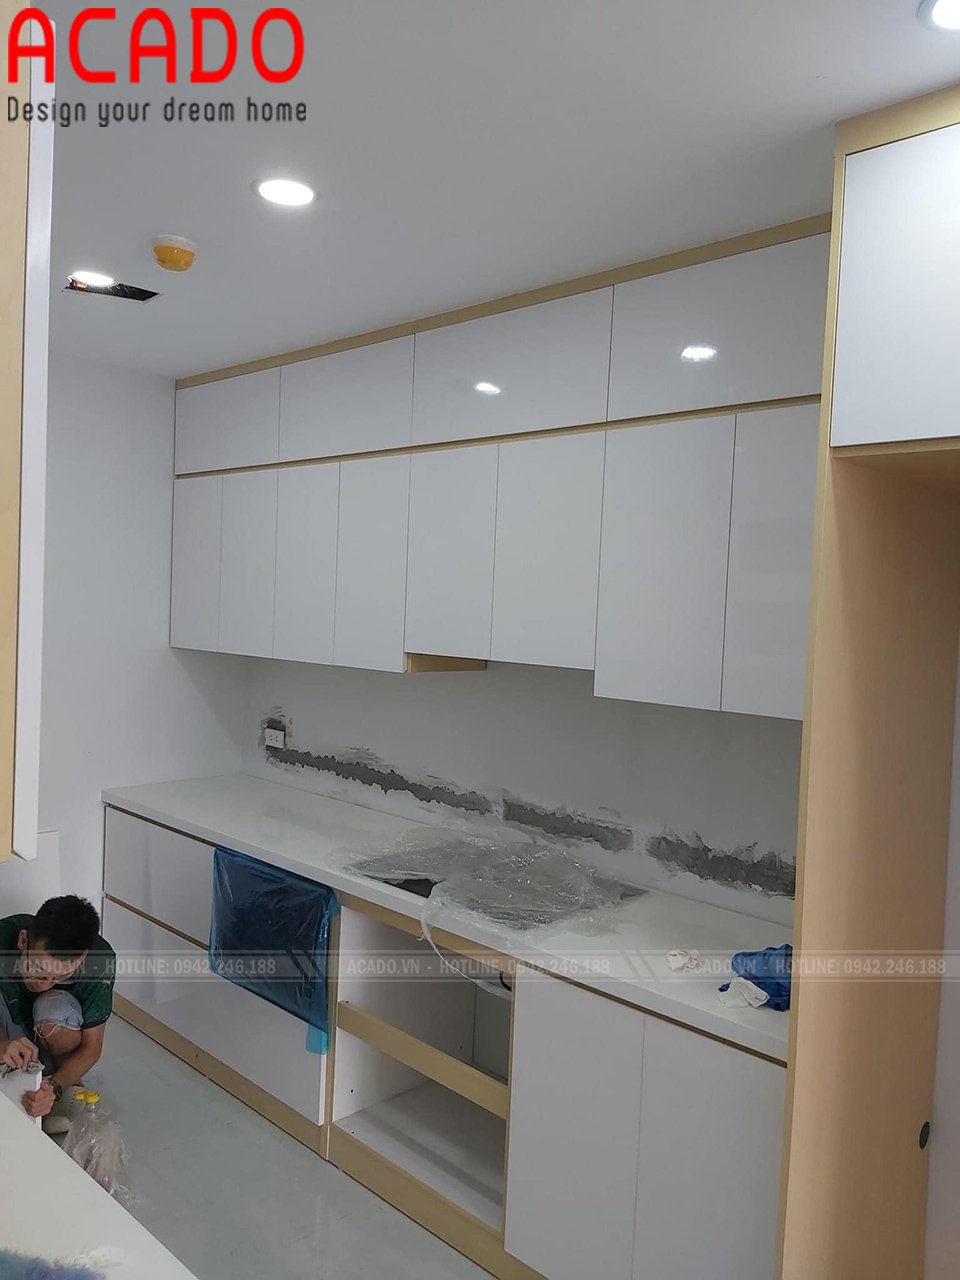 Tủ bếp mdf phủ acrylic bóng gương màu trắng. sử dụng tủ kịch trần để cất các đồ ít khi sử dụng đến, giúp căn bếp luôn gọn gàng sạch đẹp